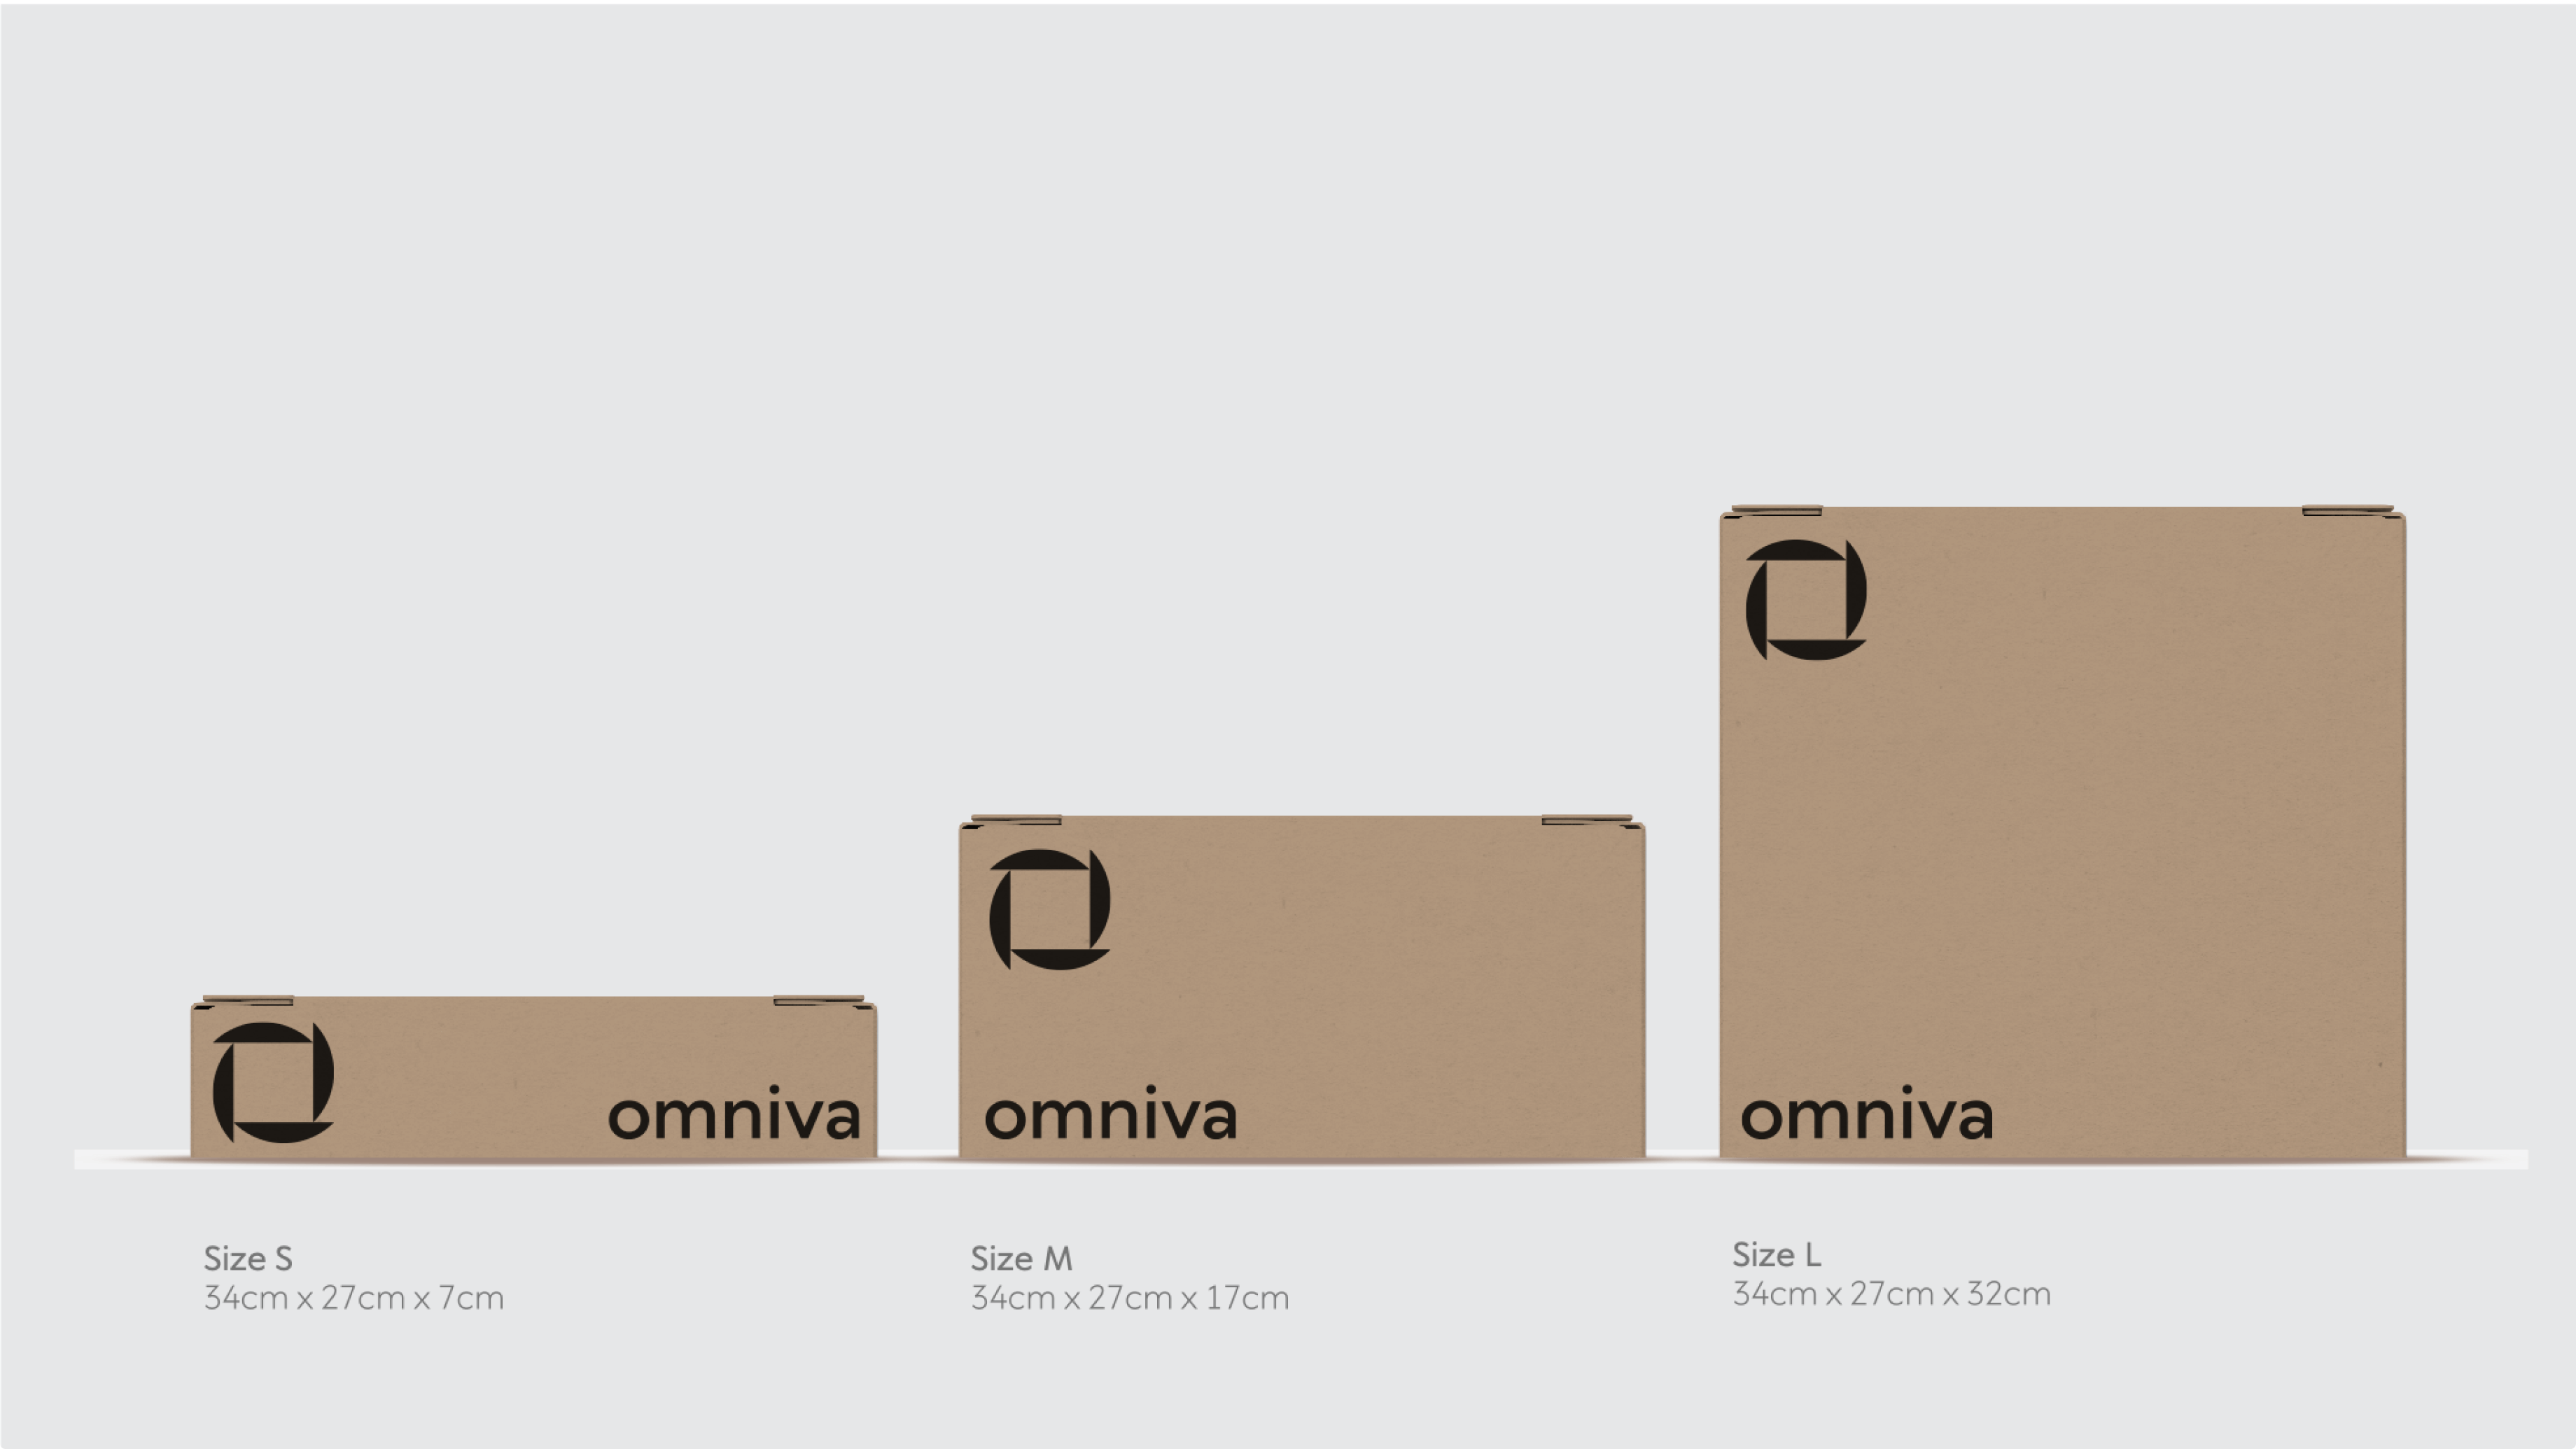 Omniva cardboard boxes